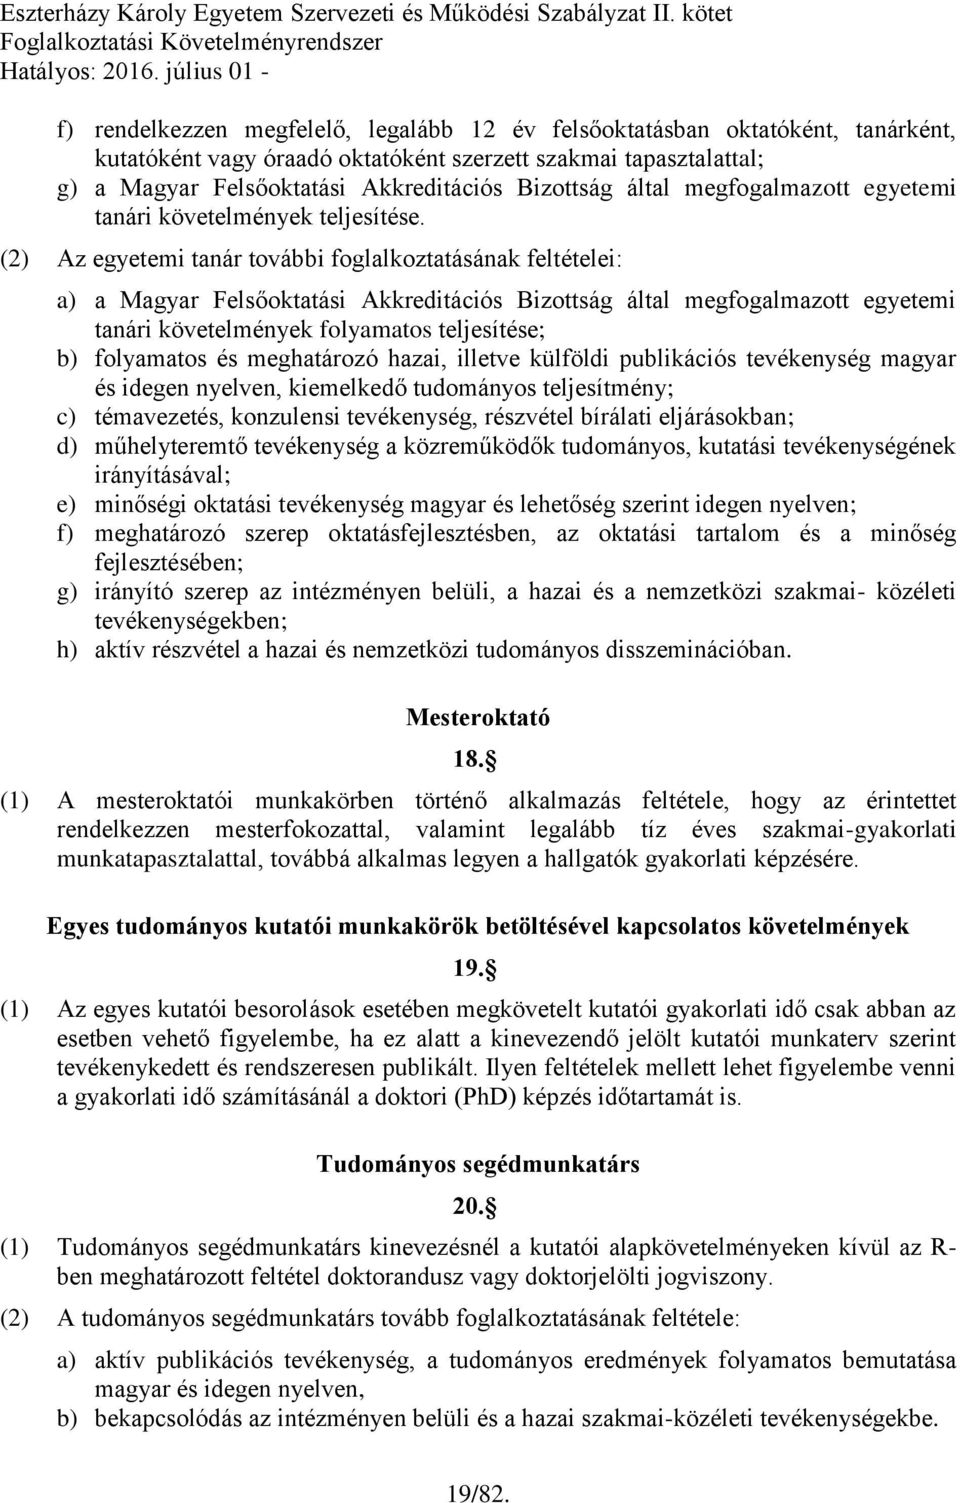 (2) Az egyetemi tanár további foglalkoztatásának feltételei: a) a Magyar Felsőoktatási Akkreditációs Bizottság által megfogalmazott egyetemi tanári követelmények folyamatos teljesítése; b) folyamatos